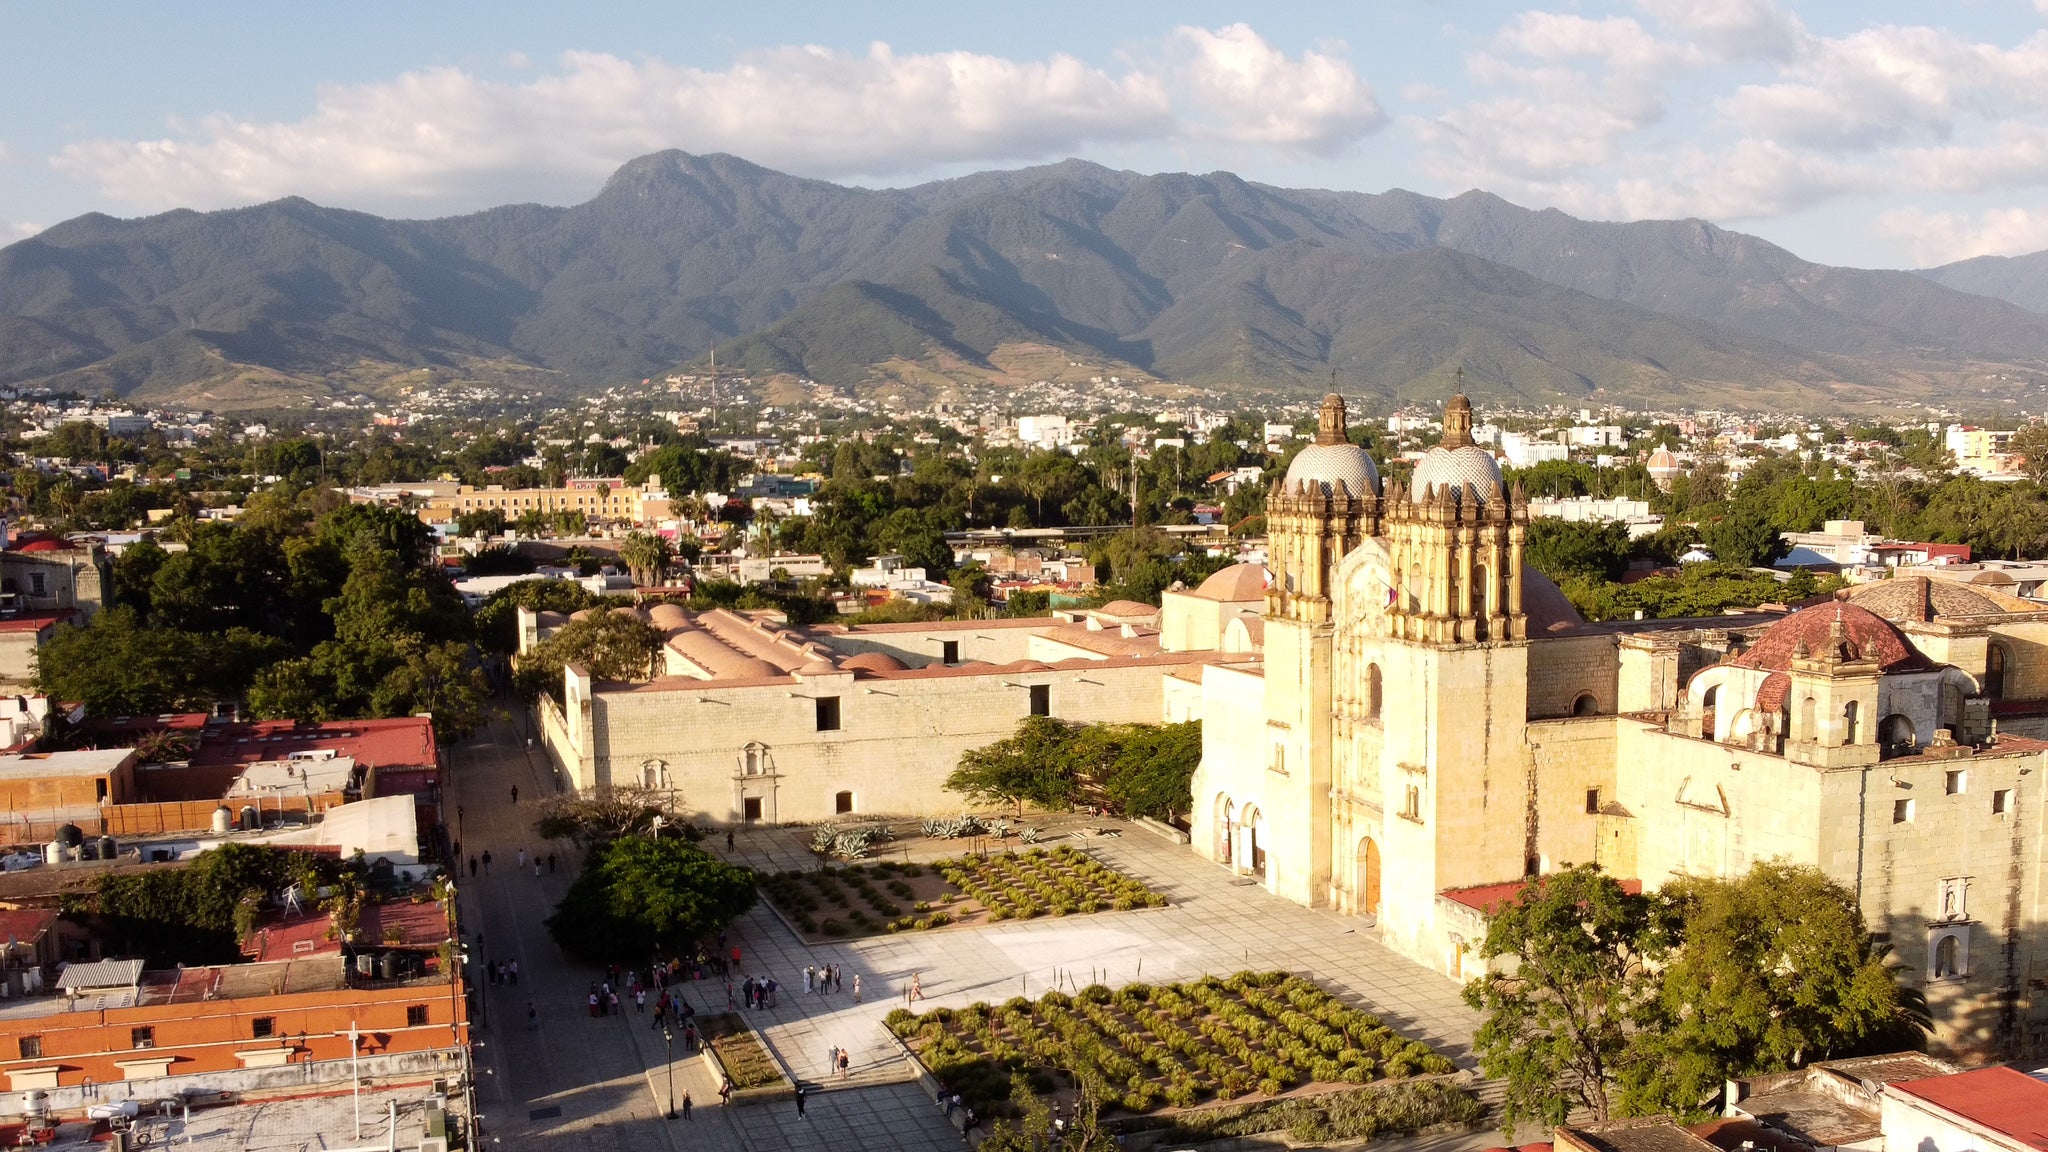 Landschaftsbild von Oaxaca city. Im Hintergrund sind die grünen Berge zu sehen.